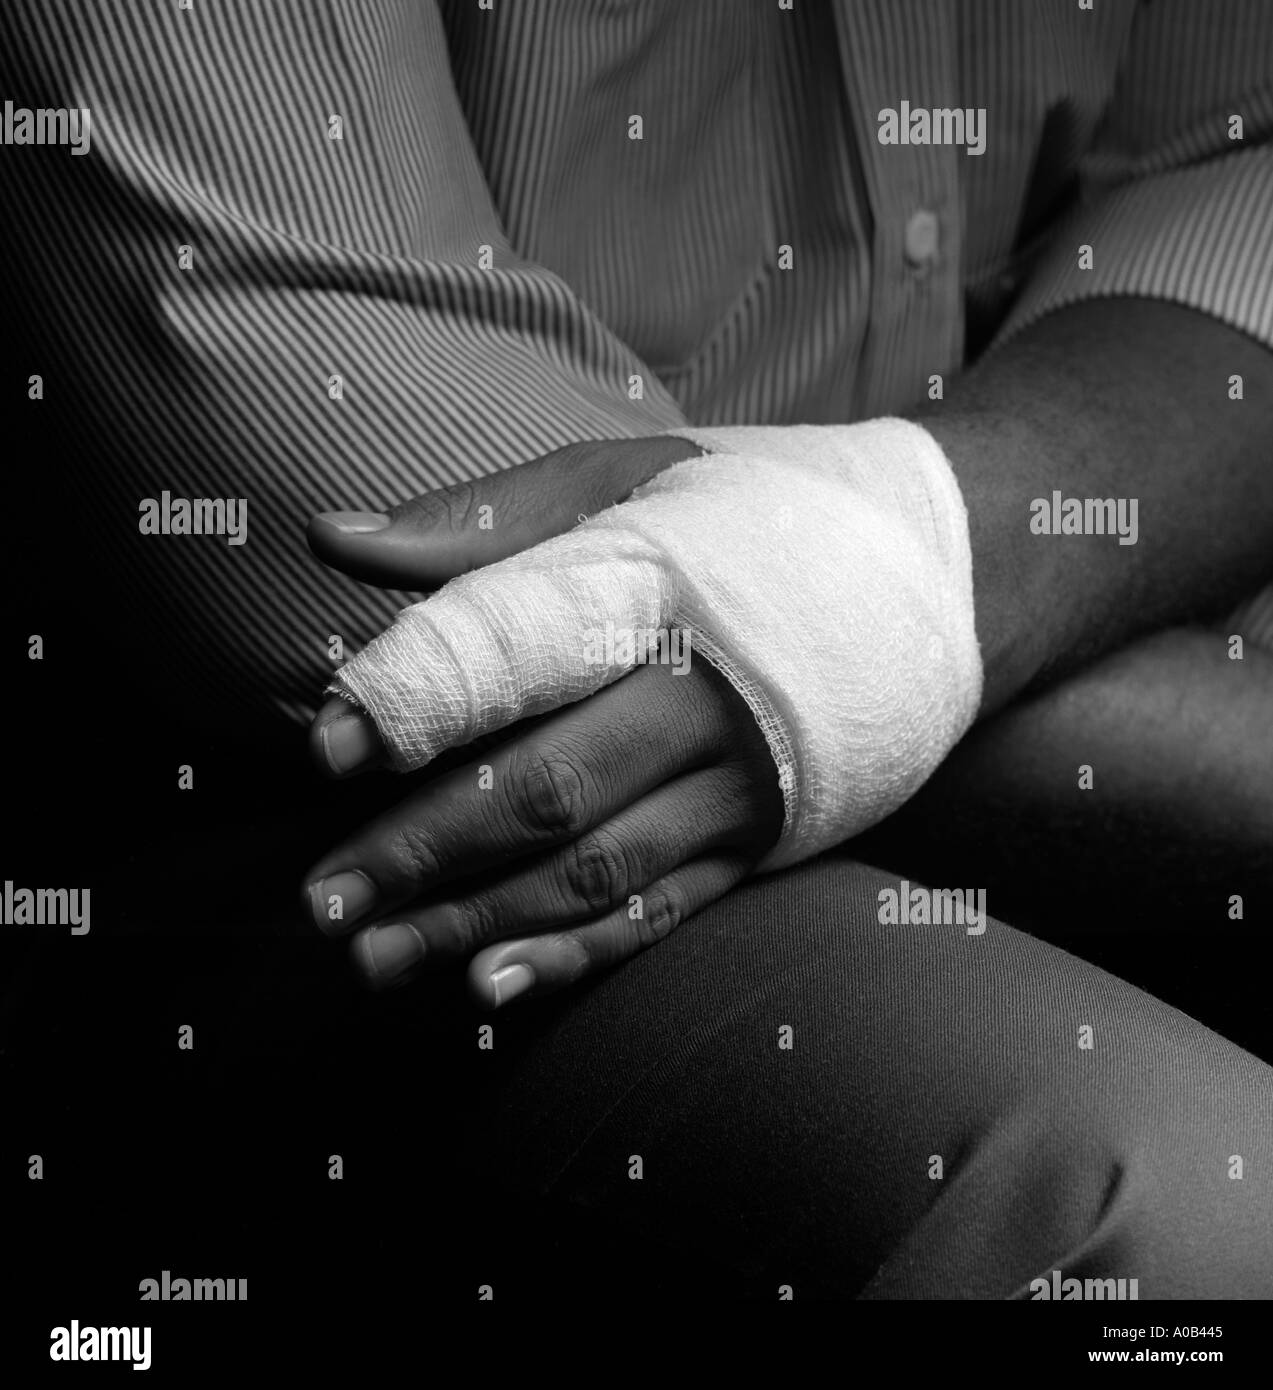 hand injury Stock Photo